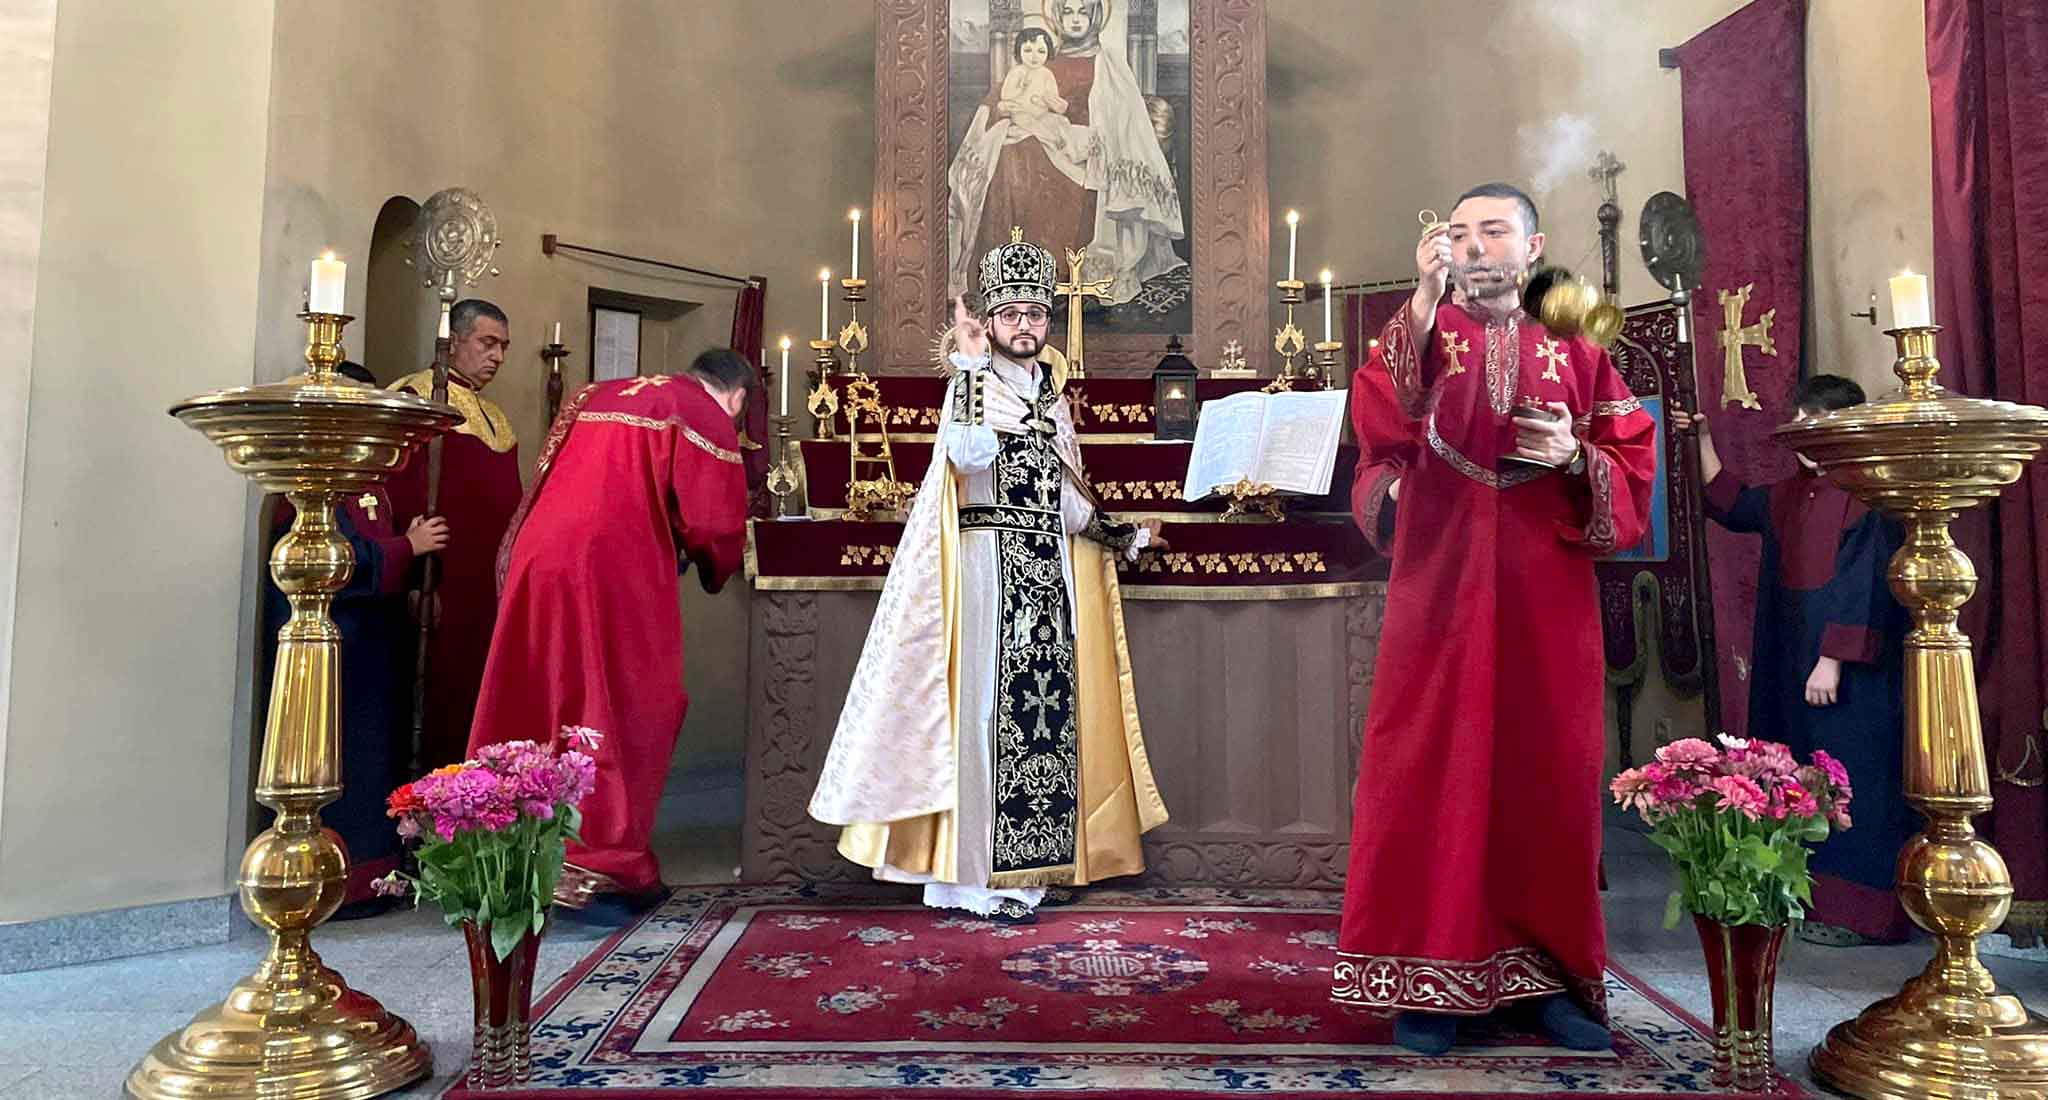 Божественной Литургией и угощением армянской гатой отметили в Тбилиси праздник Кафедрального Собора Св. Эчмиадзина